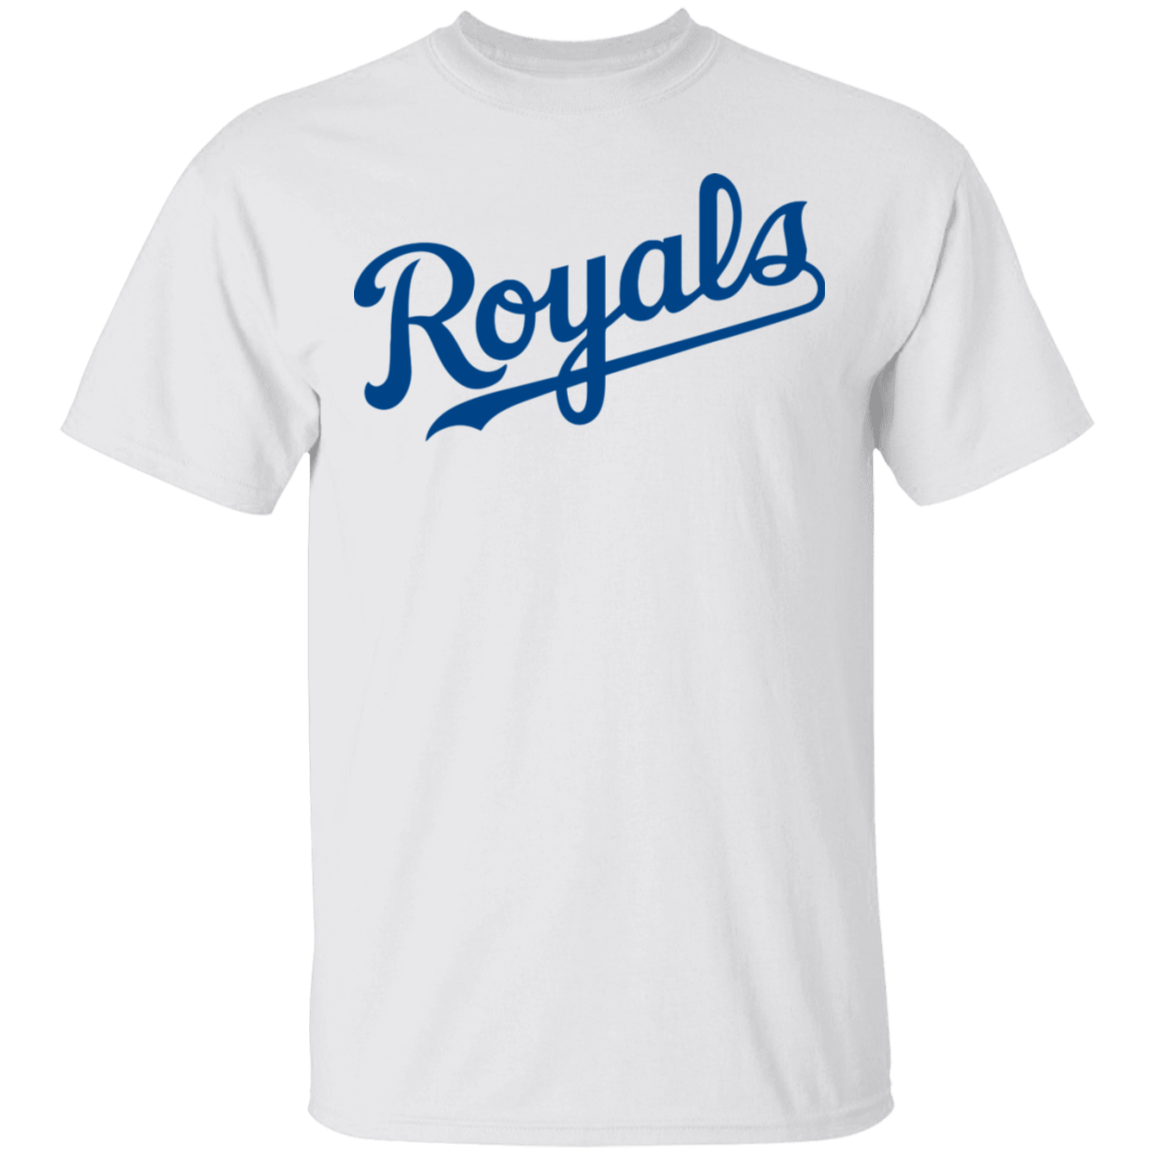 royals baseball shirt